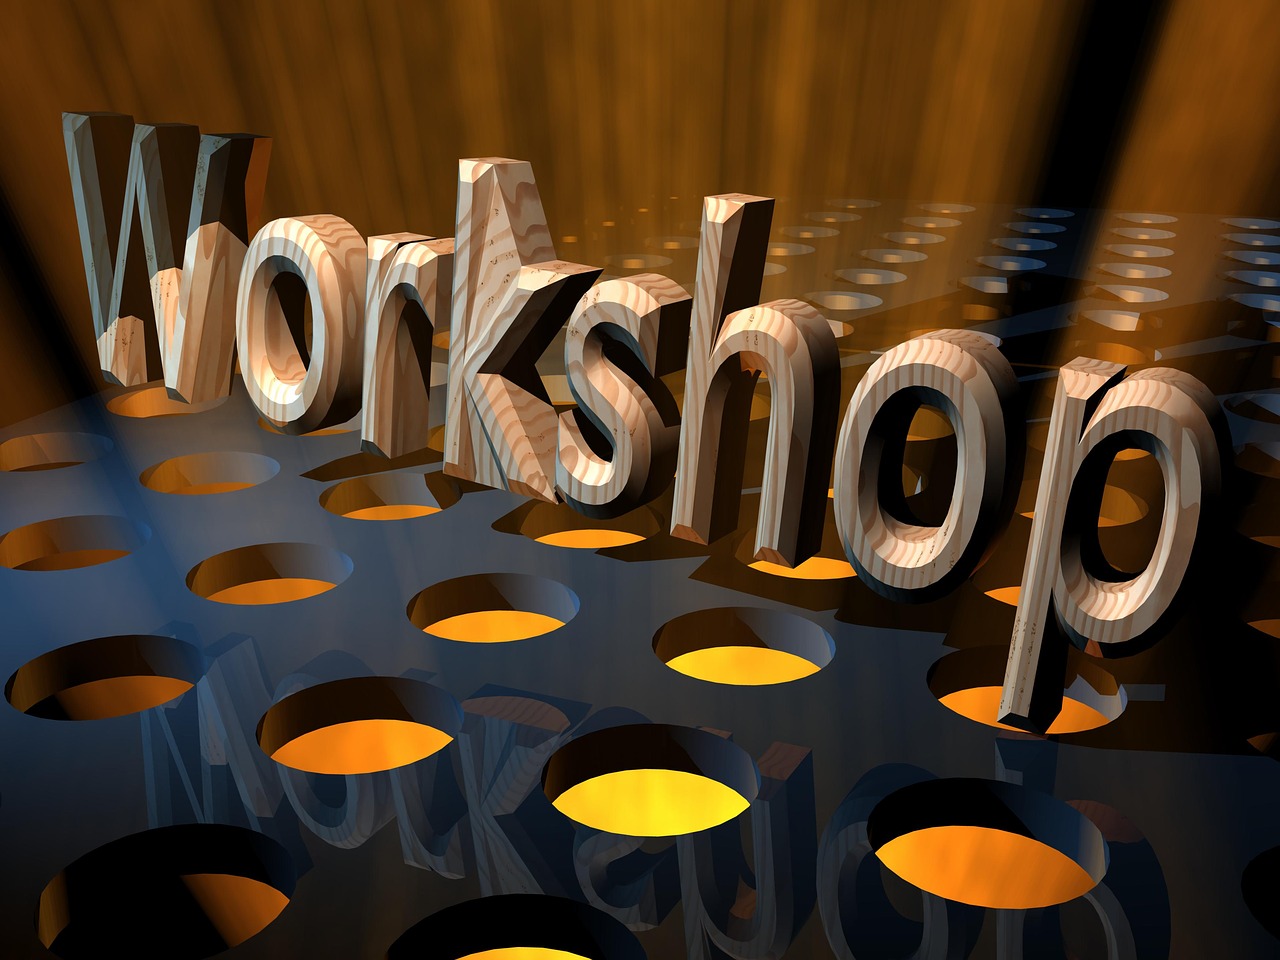 workshop, seminar, training-2542461.jpg